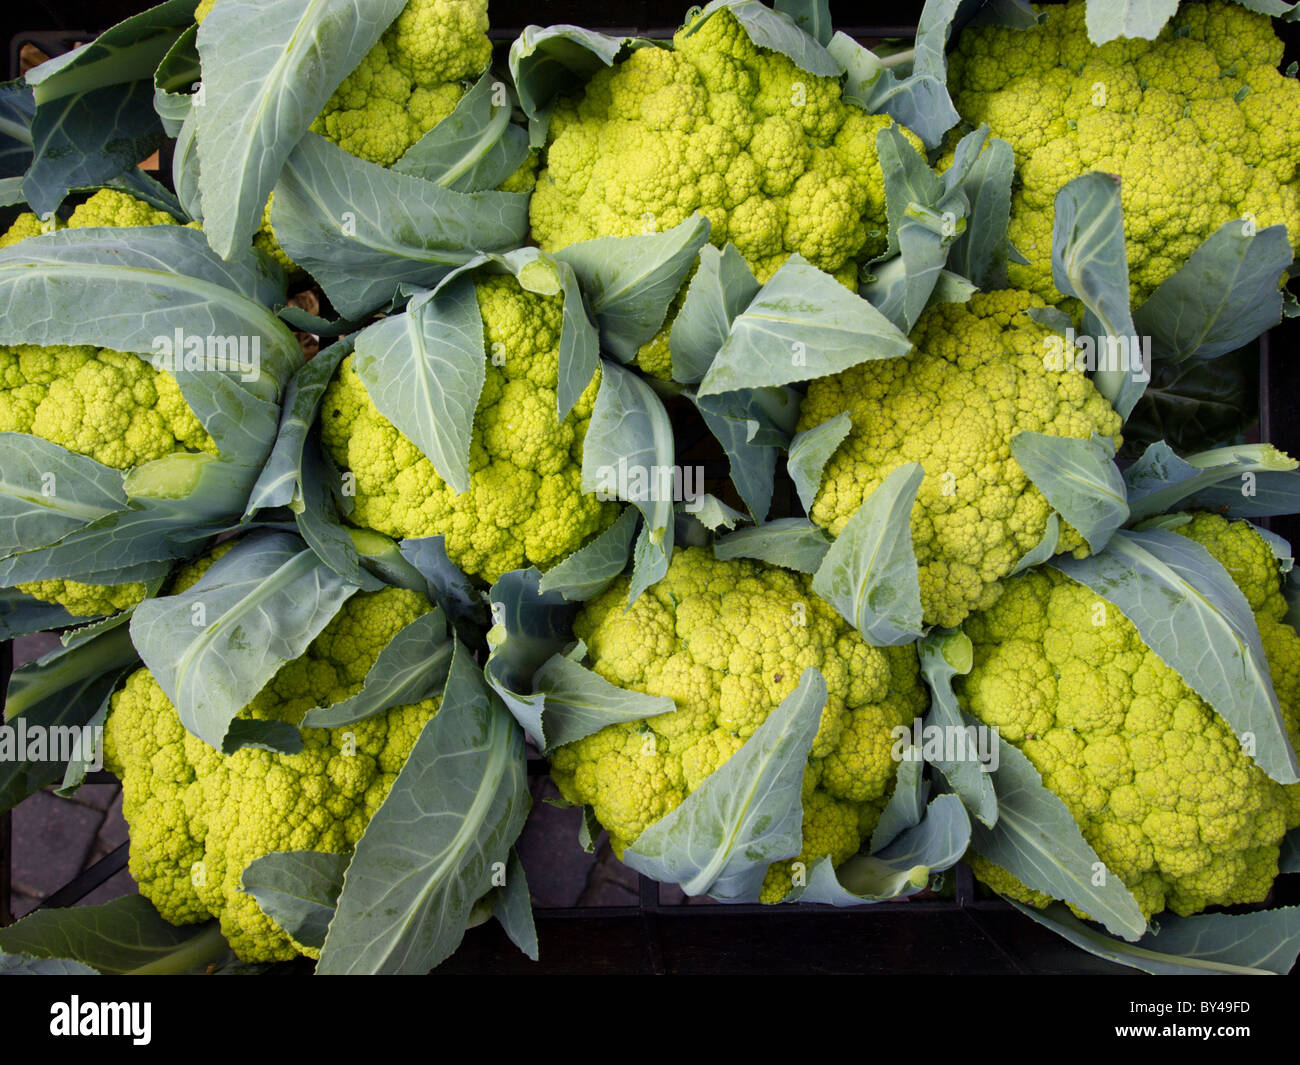 Cavolfiore verde nel mercato, Cuneo, Italia Foto Stock